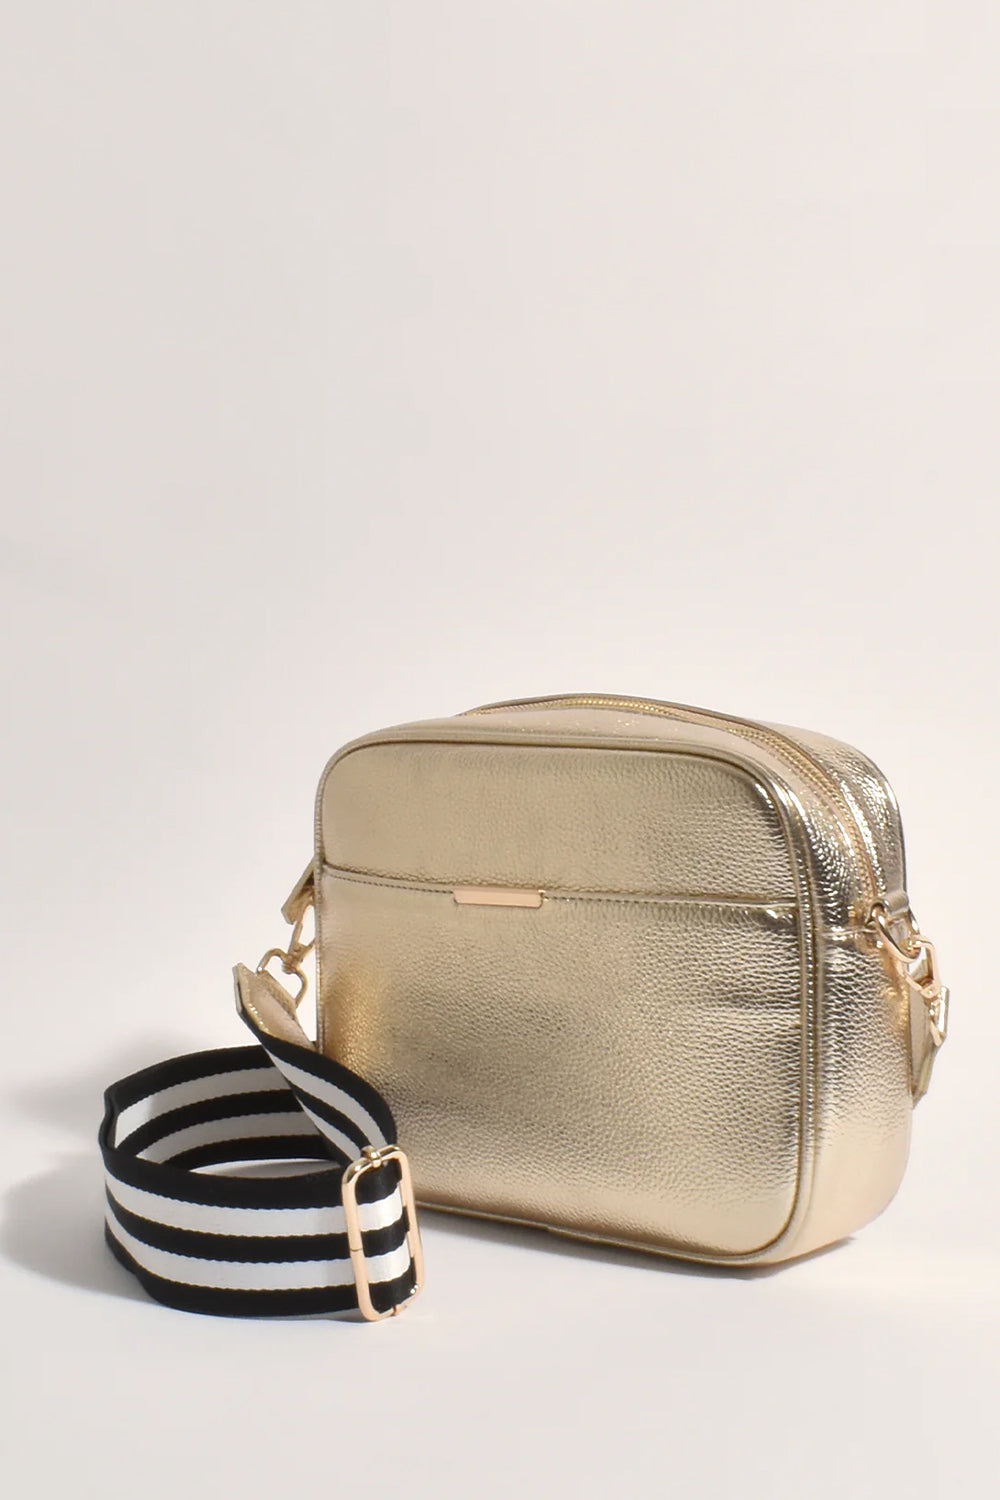 Adorne Bianca Web Pocket Camera Bag Gold/Stripe